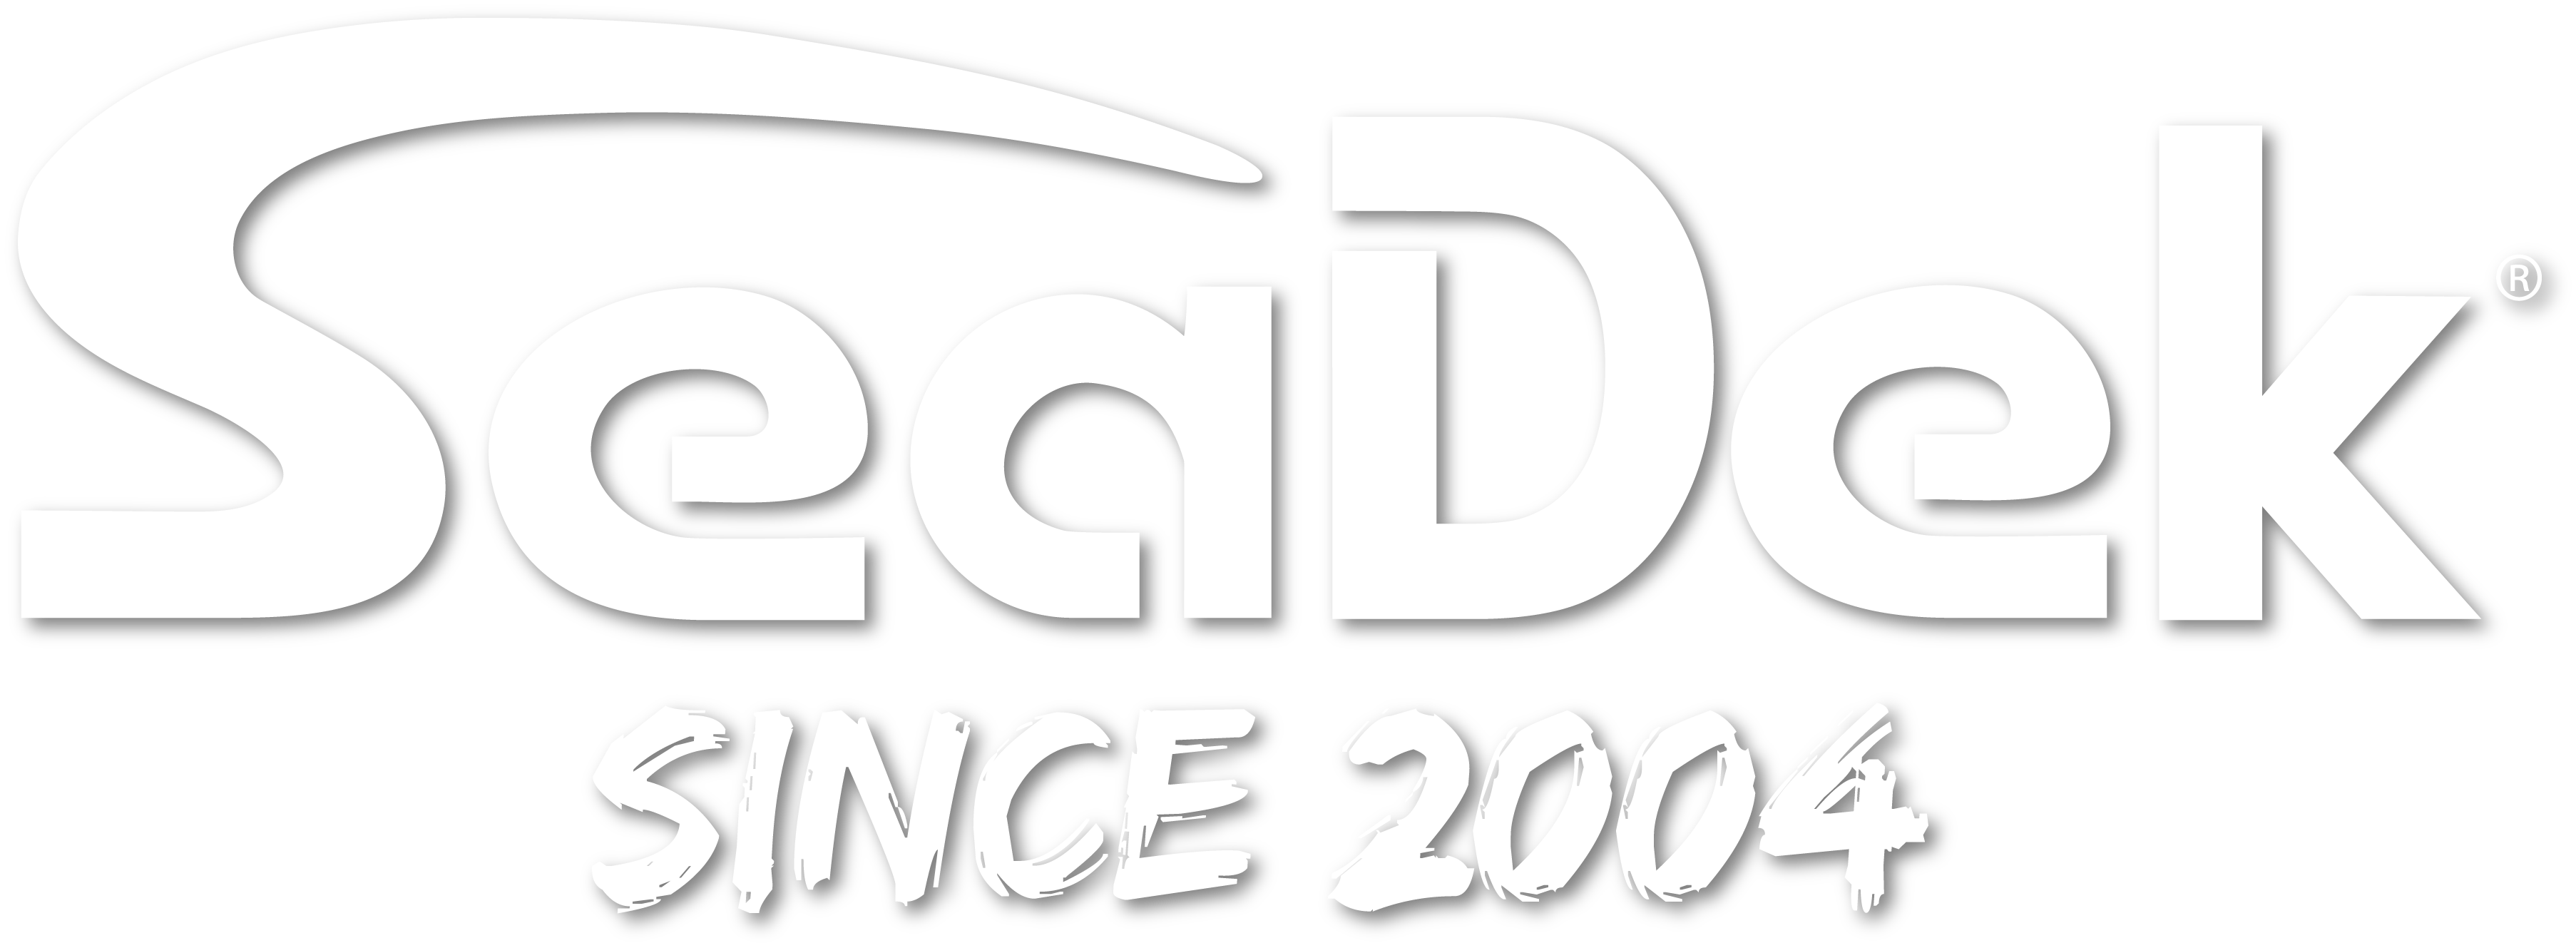 Seadek Logo